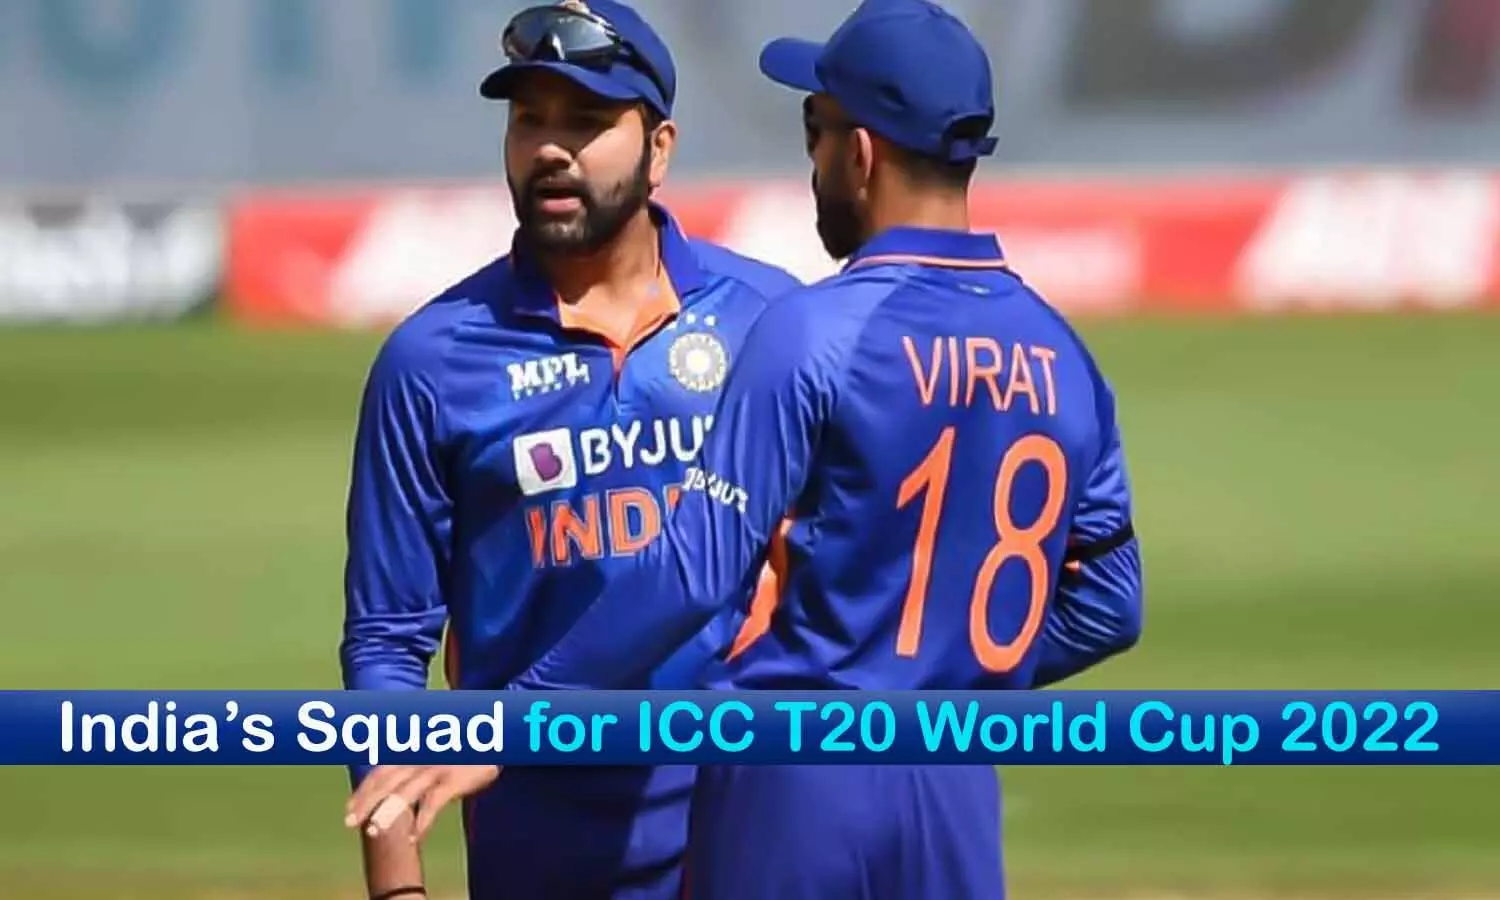 Indias Squad for T20 World Cup 2022: BCCI ने वर्ल्ड कप के लिए टीम का ऐलान किया, कार्तिक को मौका, देखें प्लेयर्स की लिस्ट